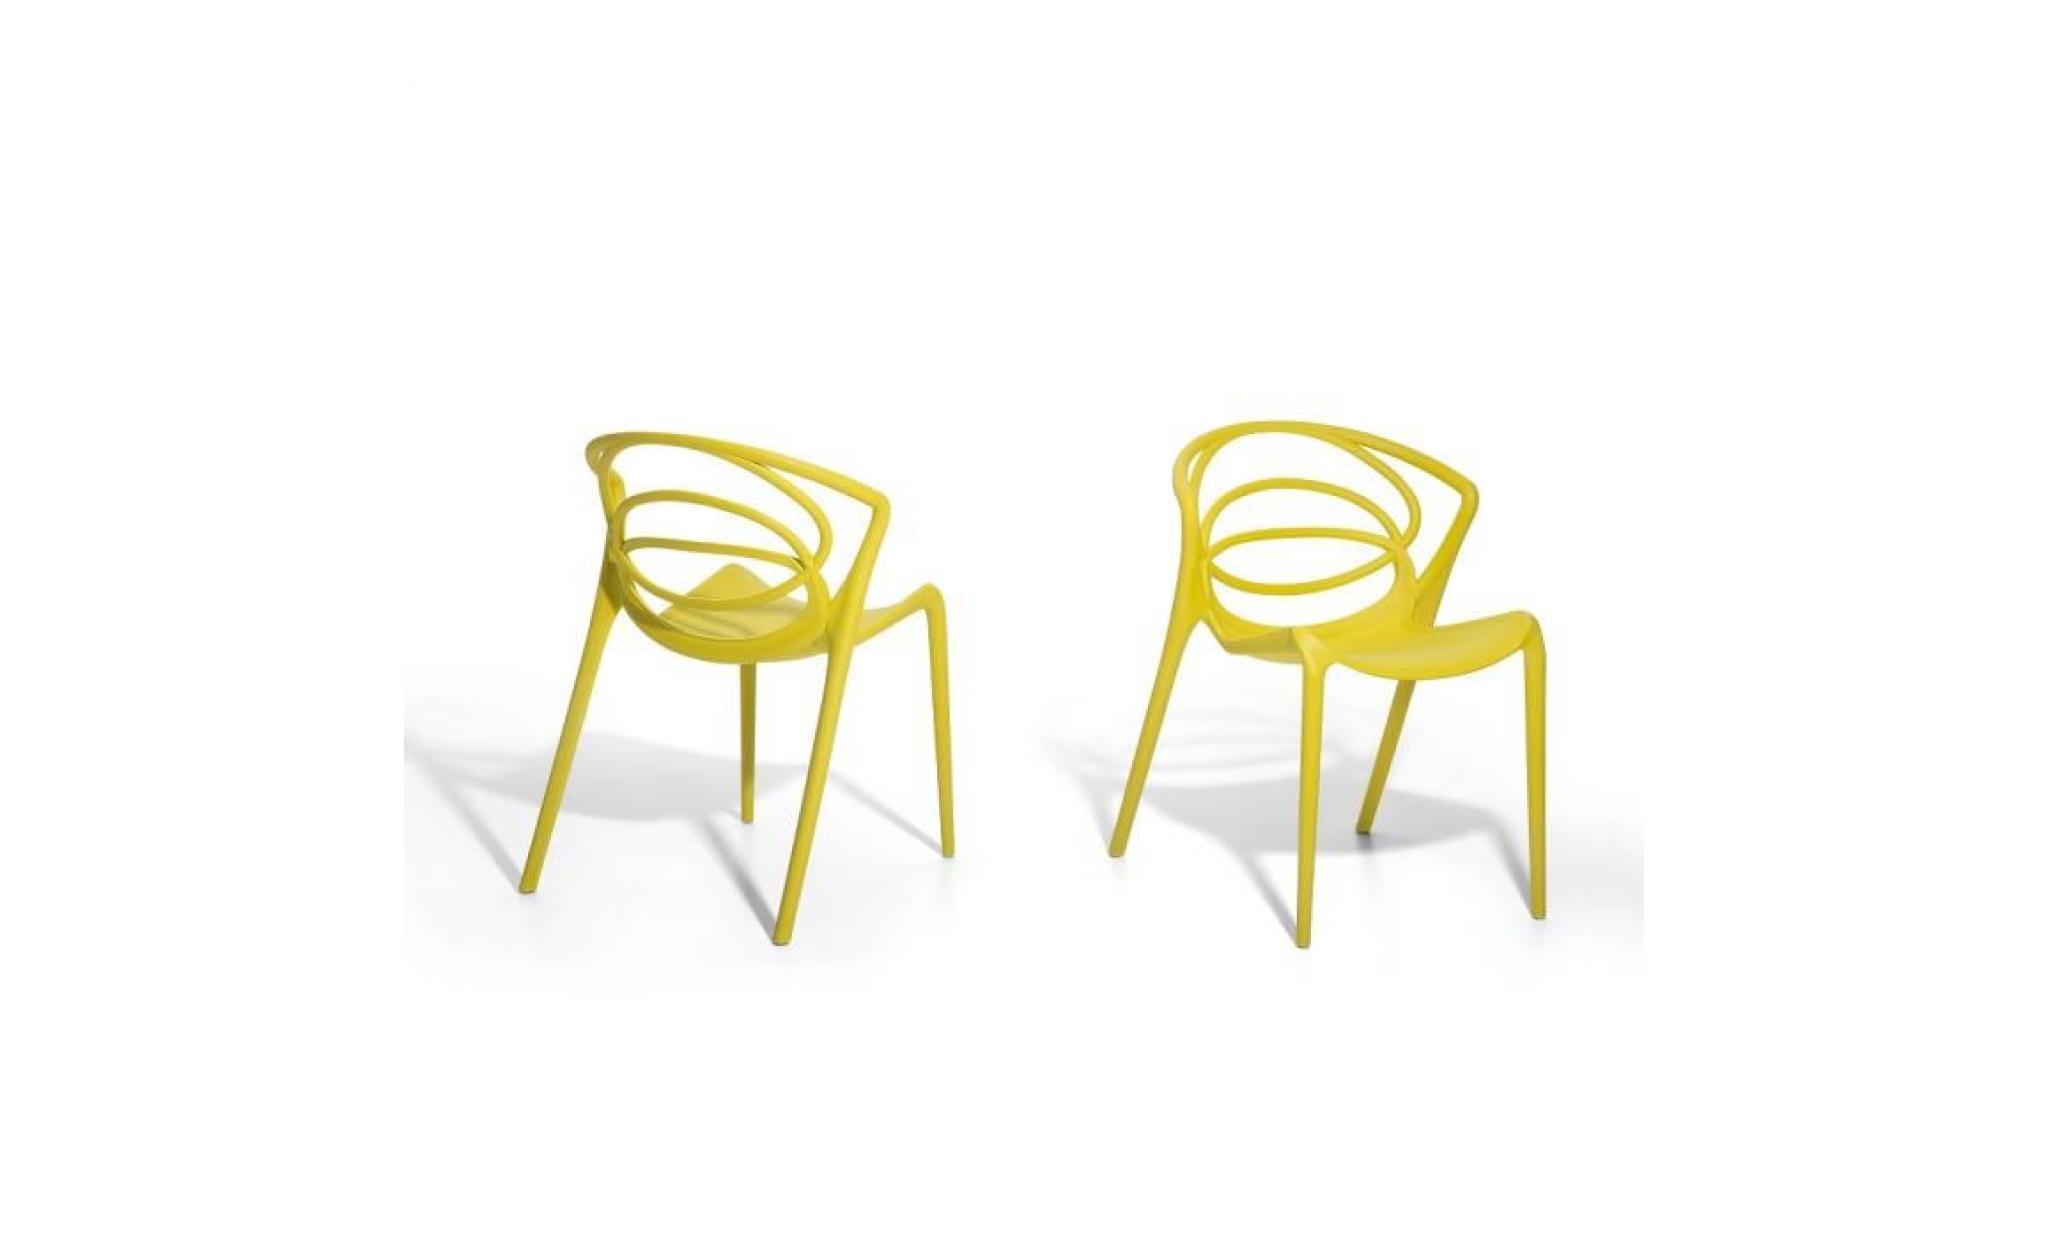 Chaise de jardin design - siège en plastique jaune - Bend pas cher